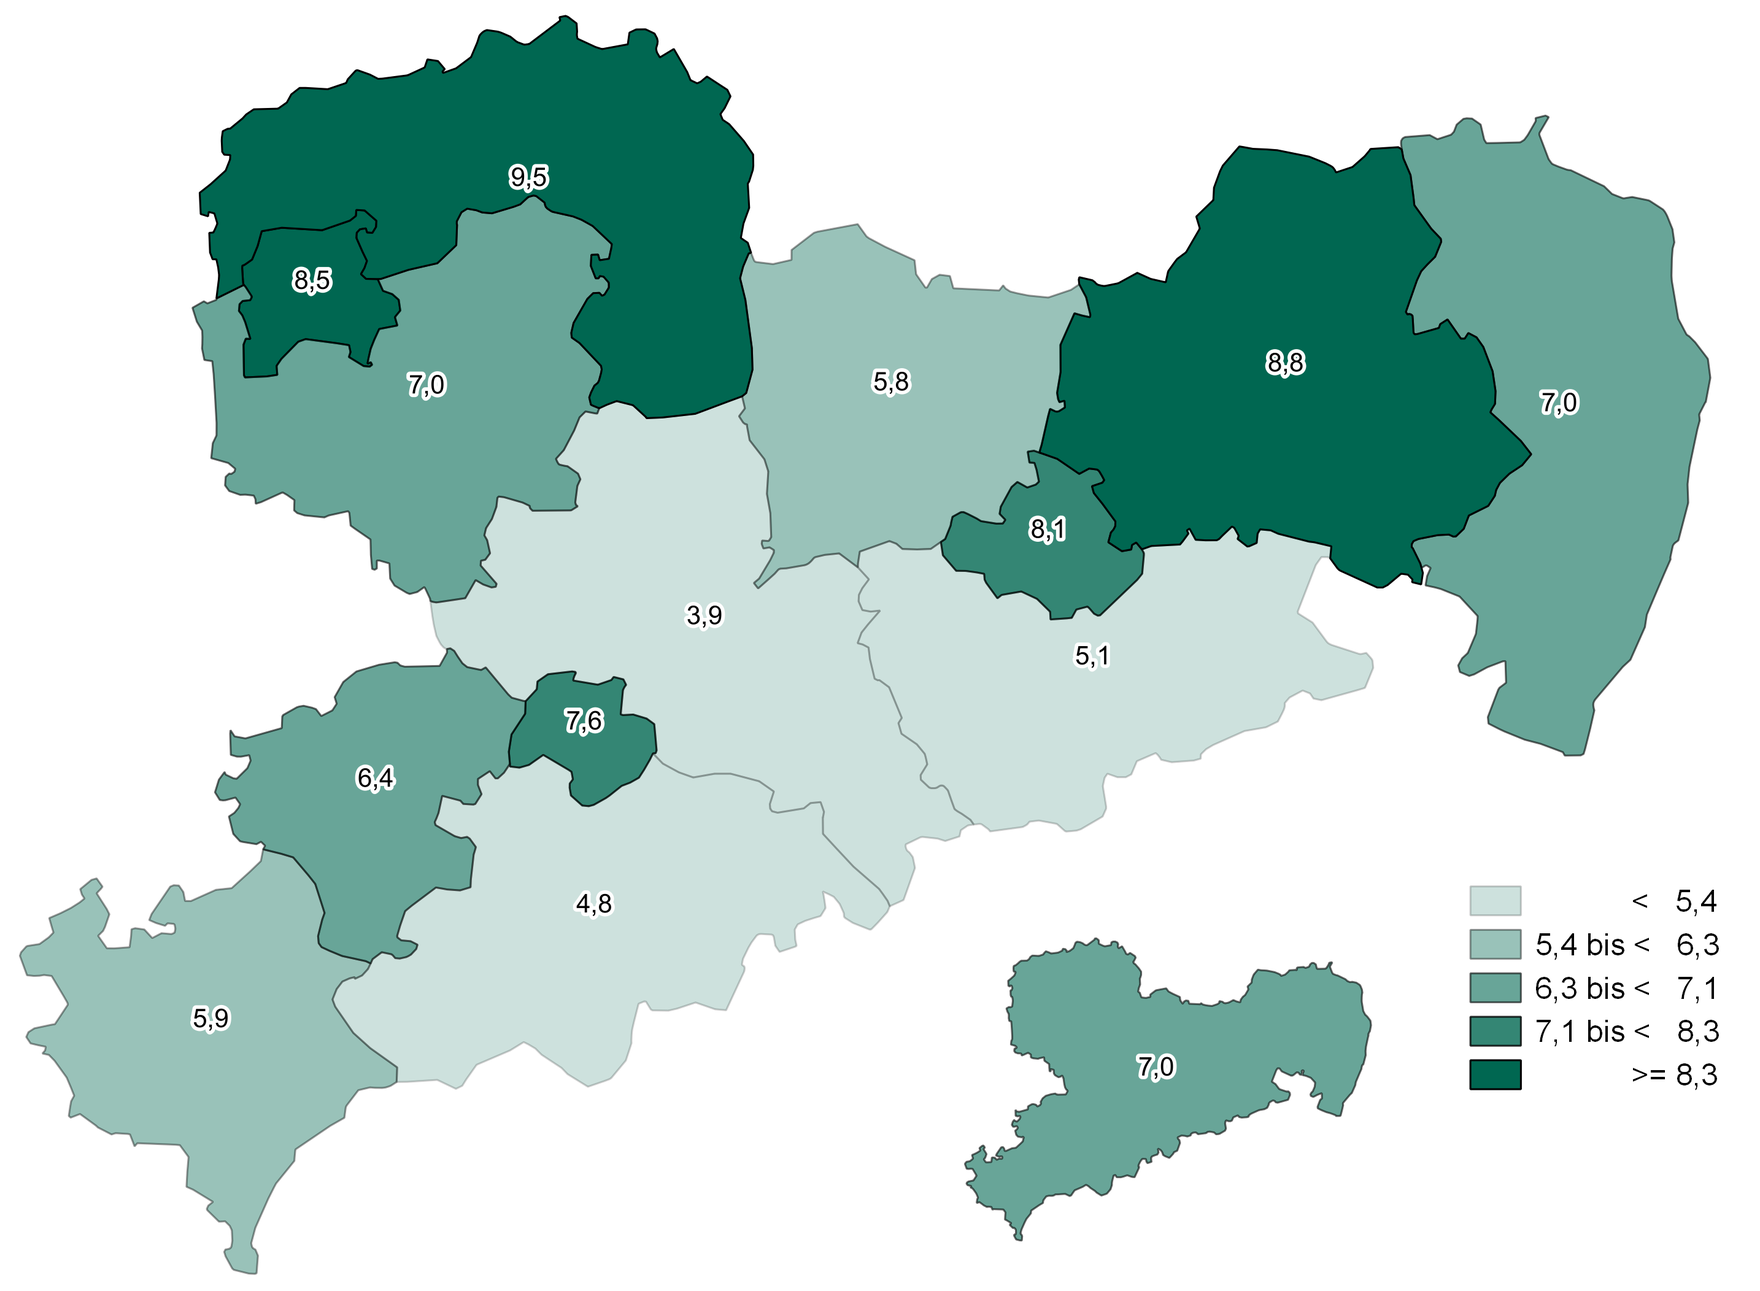 Der höchste Anteil untersuchter Schulanfänger ohne Dokumentation der Früherkennungsuntersuchung befindet sich in Nordsachsen, Leipzig und Bautzen. Im Erzgebirgskreis, in Mittelsachsen und der Sächsischen Schweiz war der Anteil am geringsten.